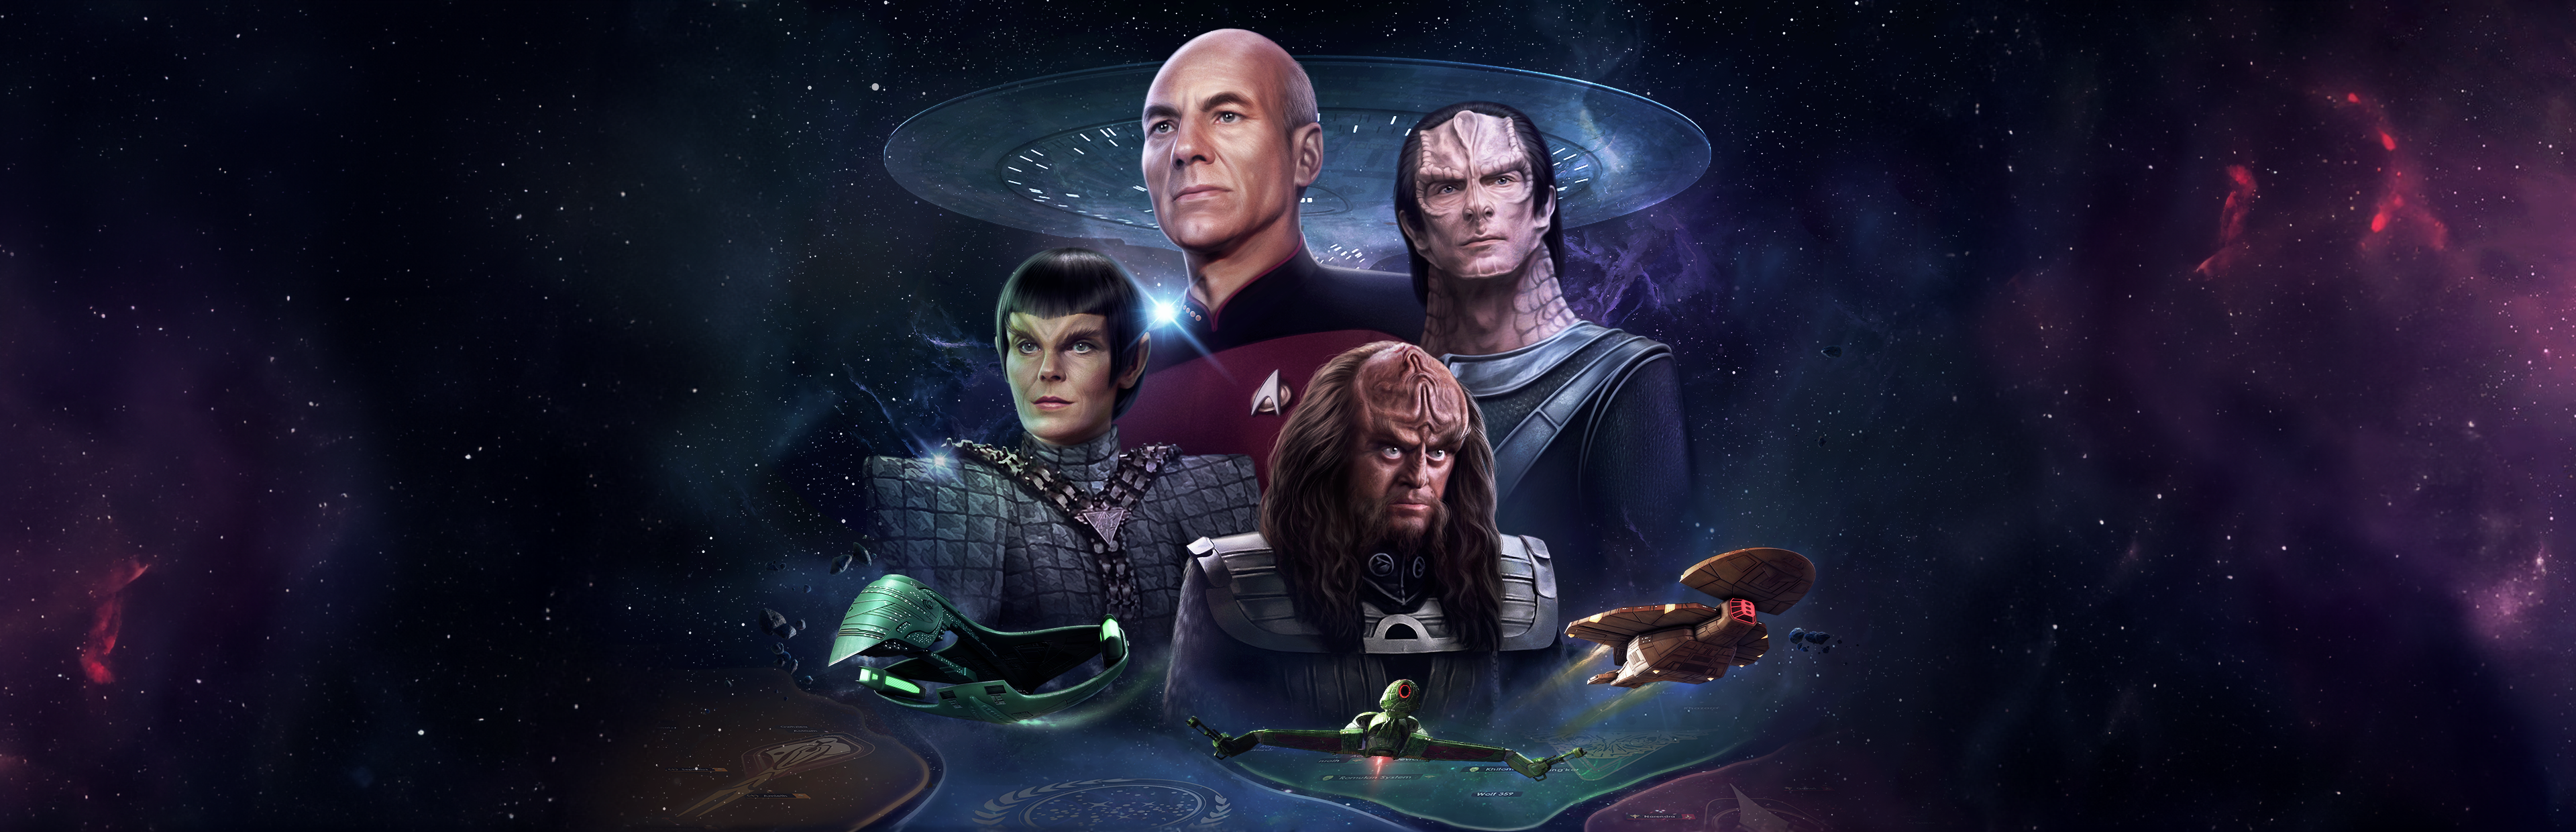 Star Trek: Infinite full release on steam NOW!